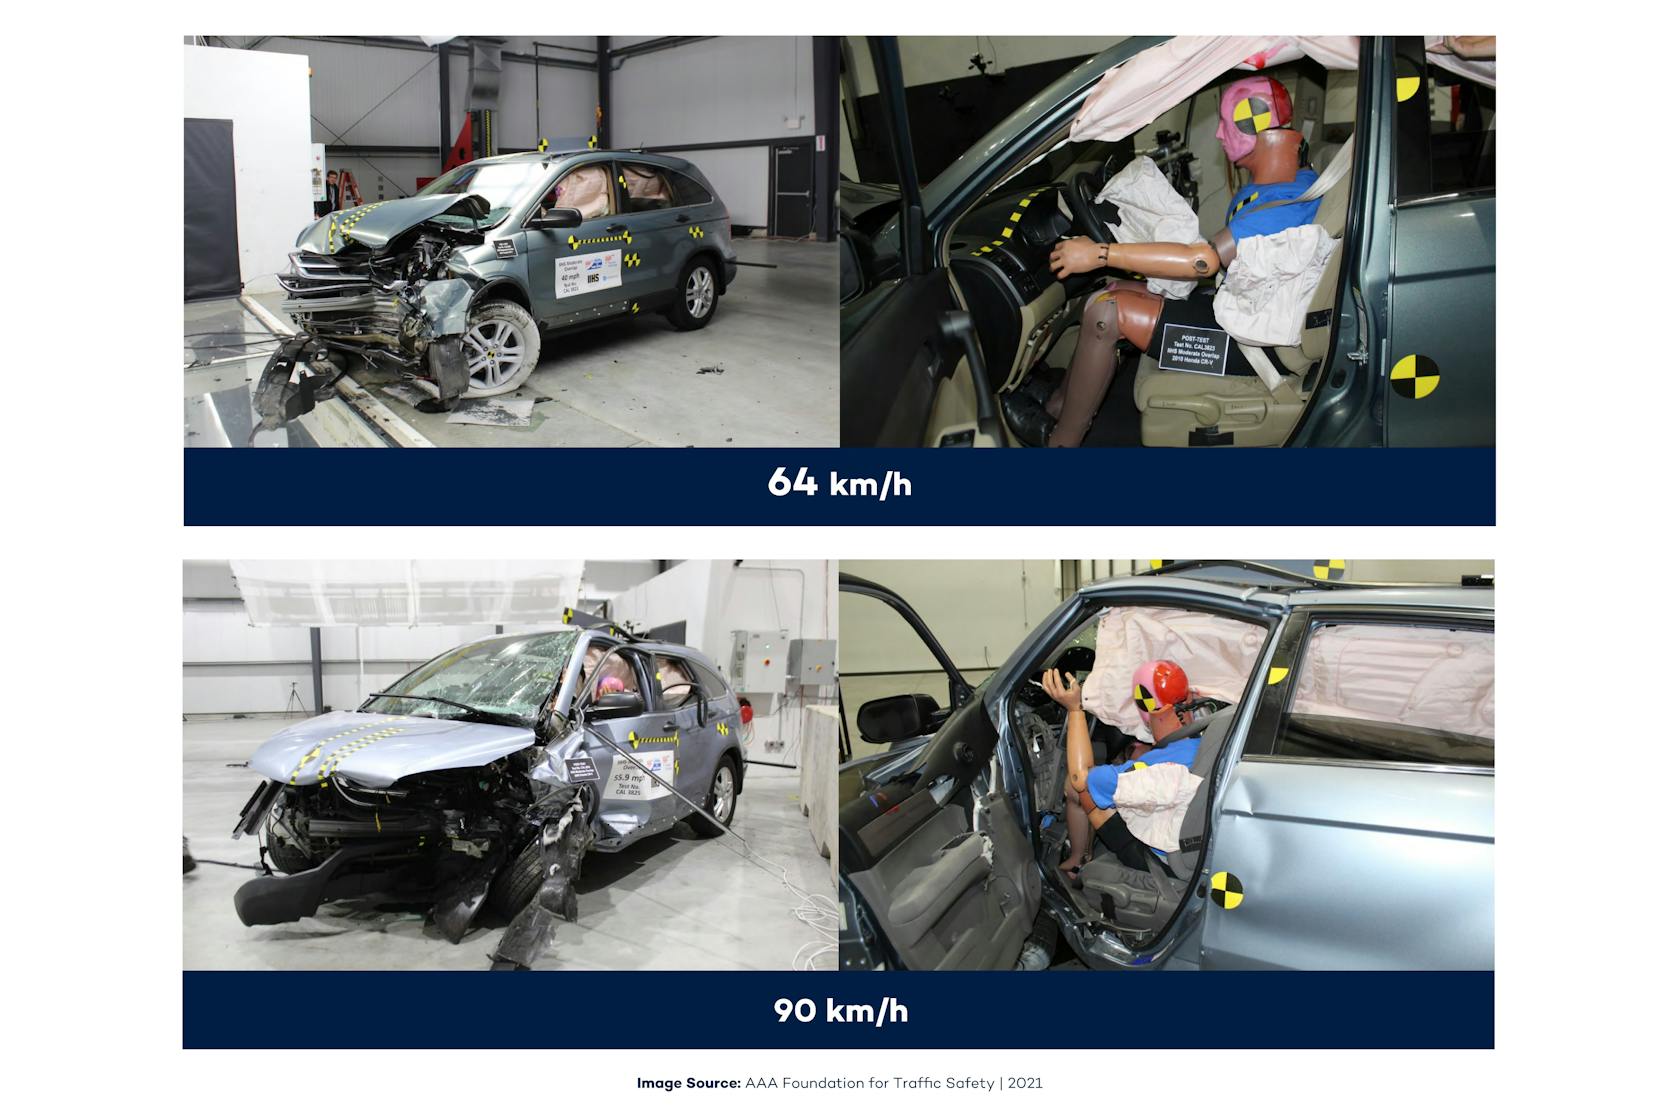 Cztery zdjęcia z testu zderzeniowego. Dwa pokazujące skutki zderzenia przy prędkości 64 km/h, dwa pokazujące prędkość 90 km/h.